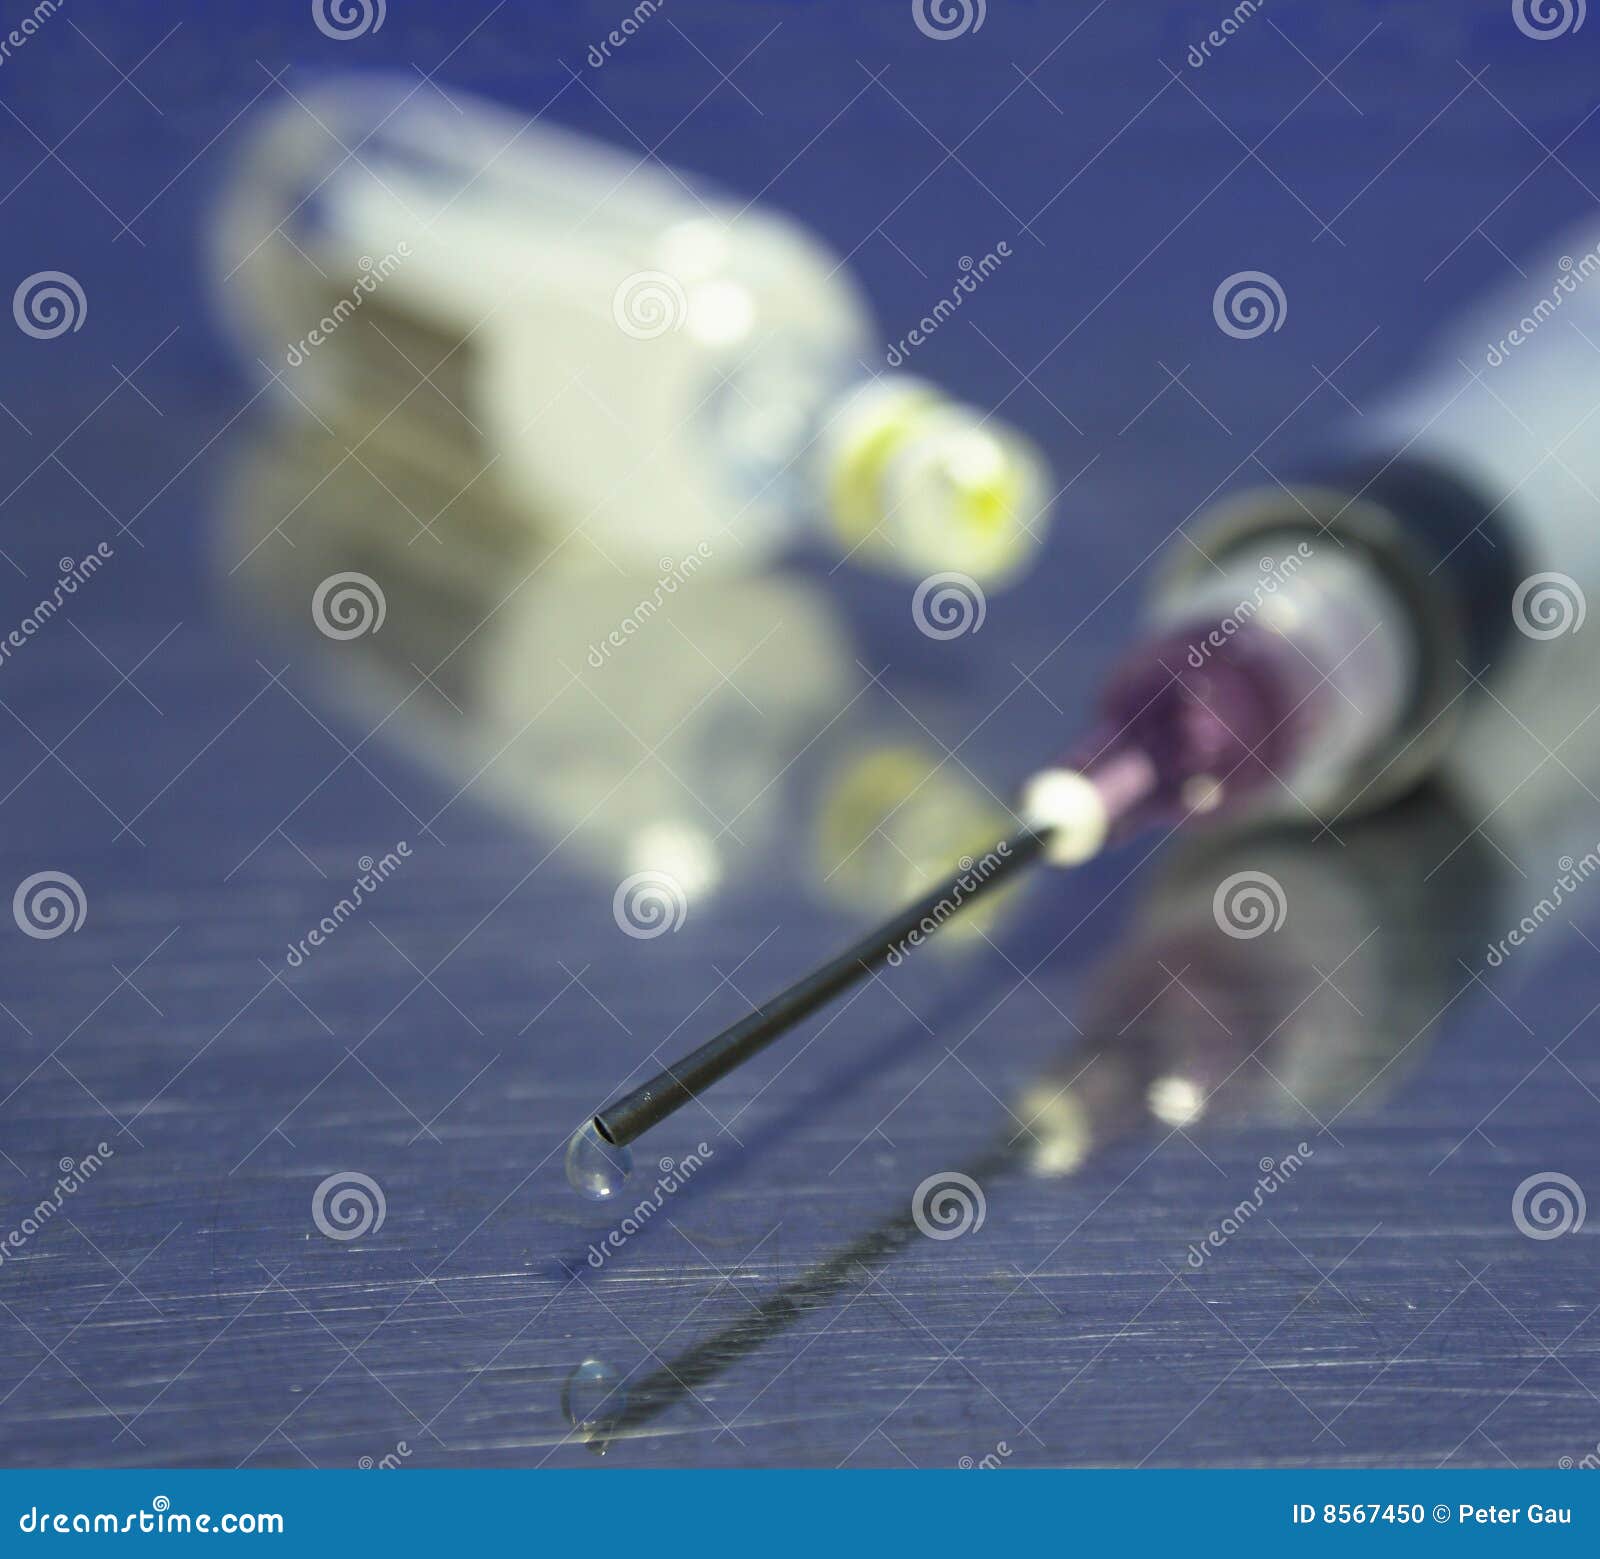 syringe, sharp needle and ampule